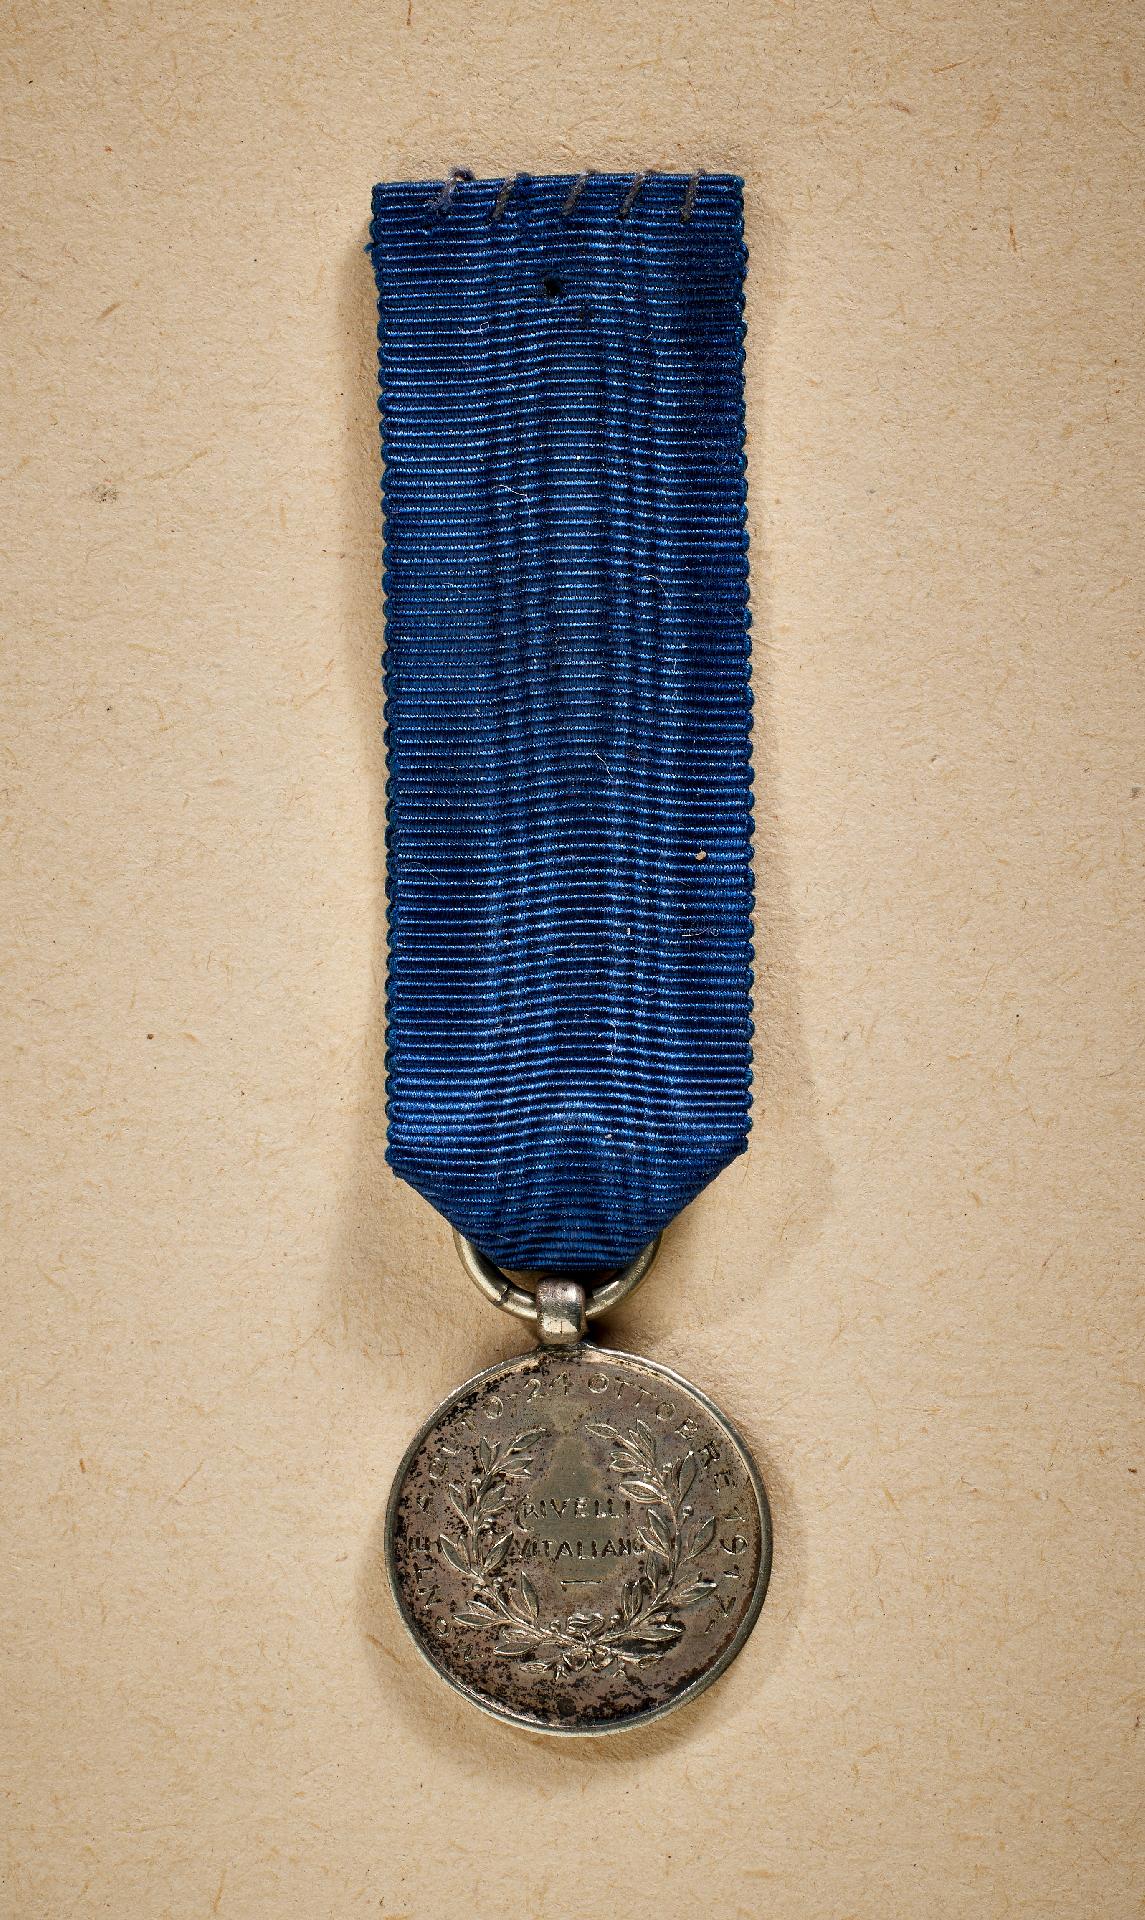 Italien : Silberne Militärverdienstmedaille "AL VALORE MILITARE" , 1917. - Image 2 of 2